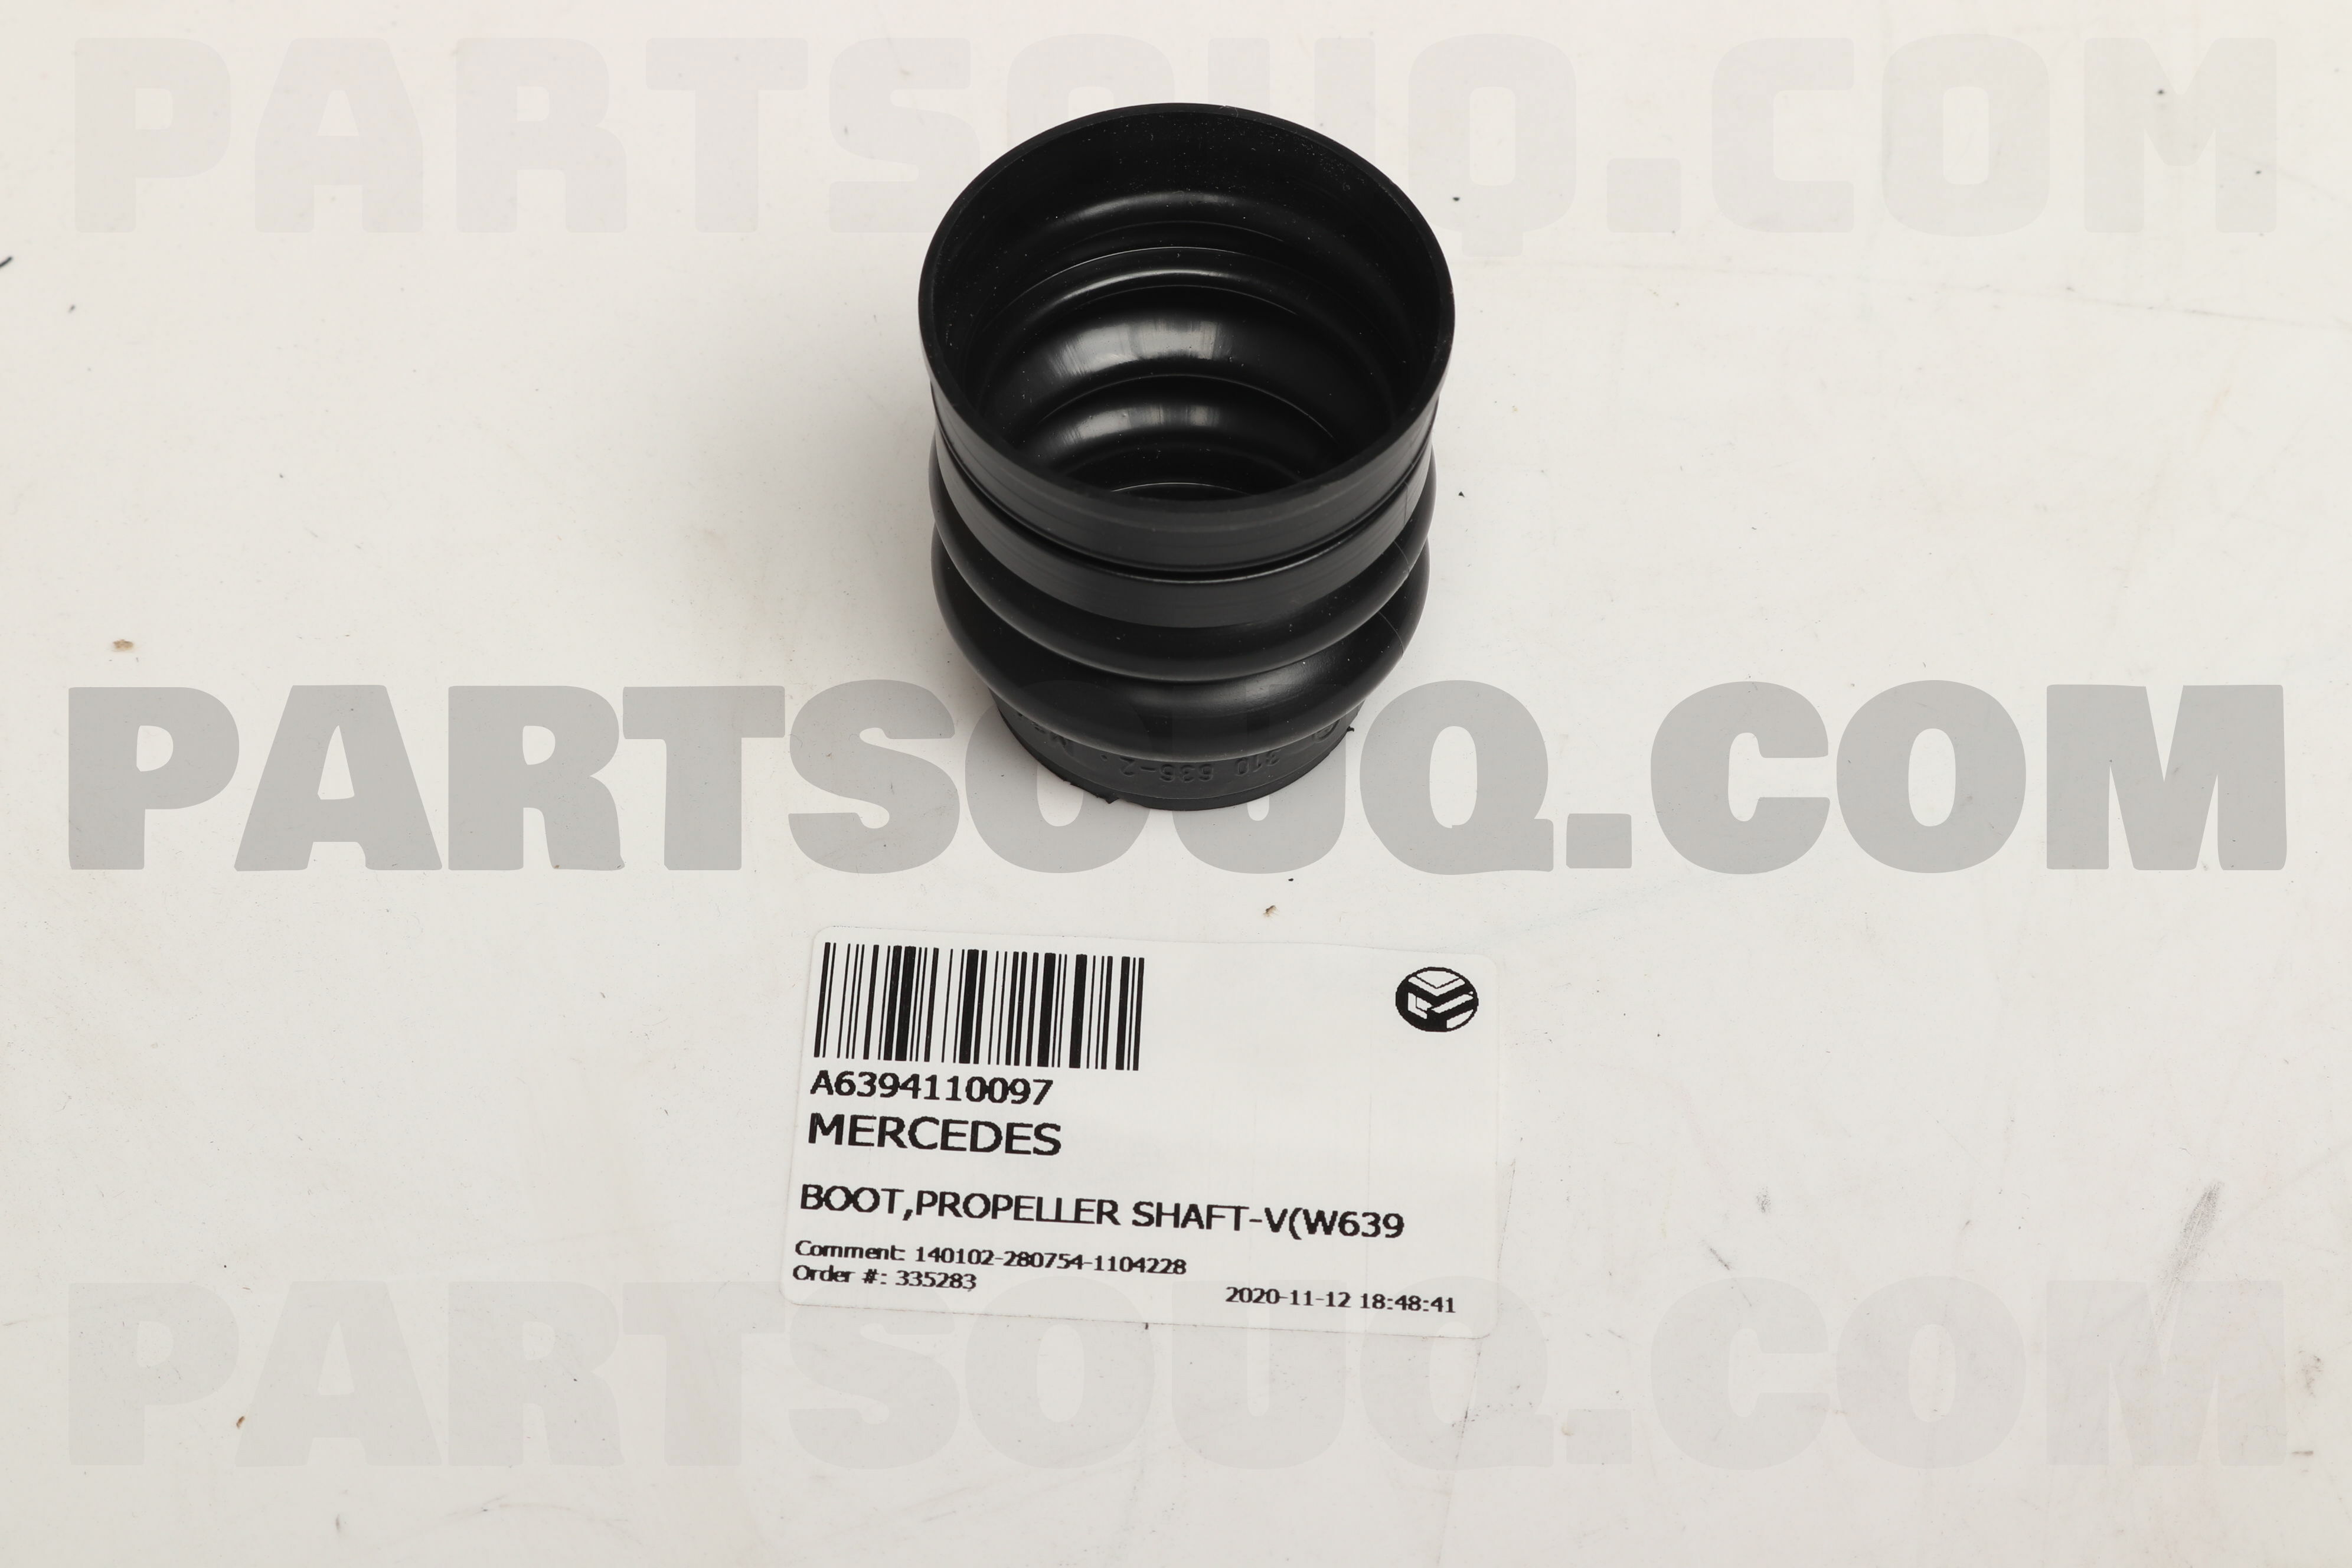 Boot,Propeller Shaft-V(W639) A6394110097 | Mercedes Parts | Partsouq